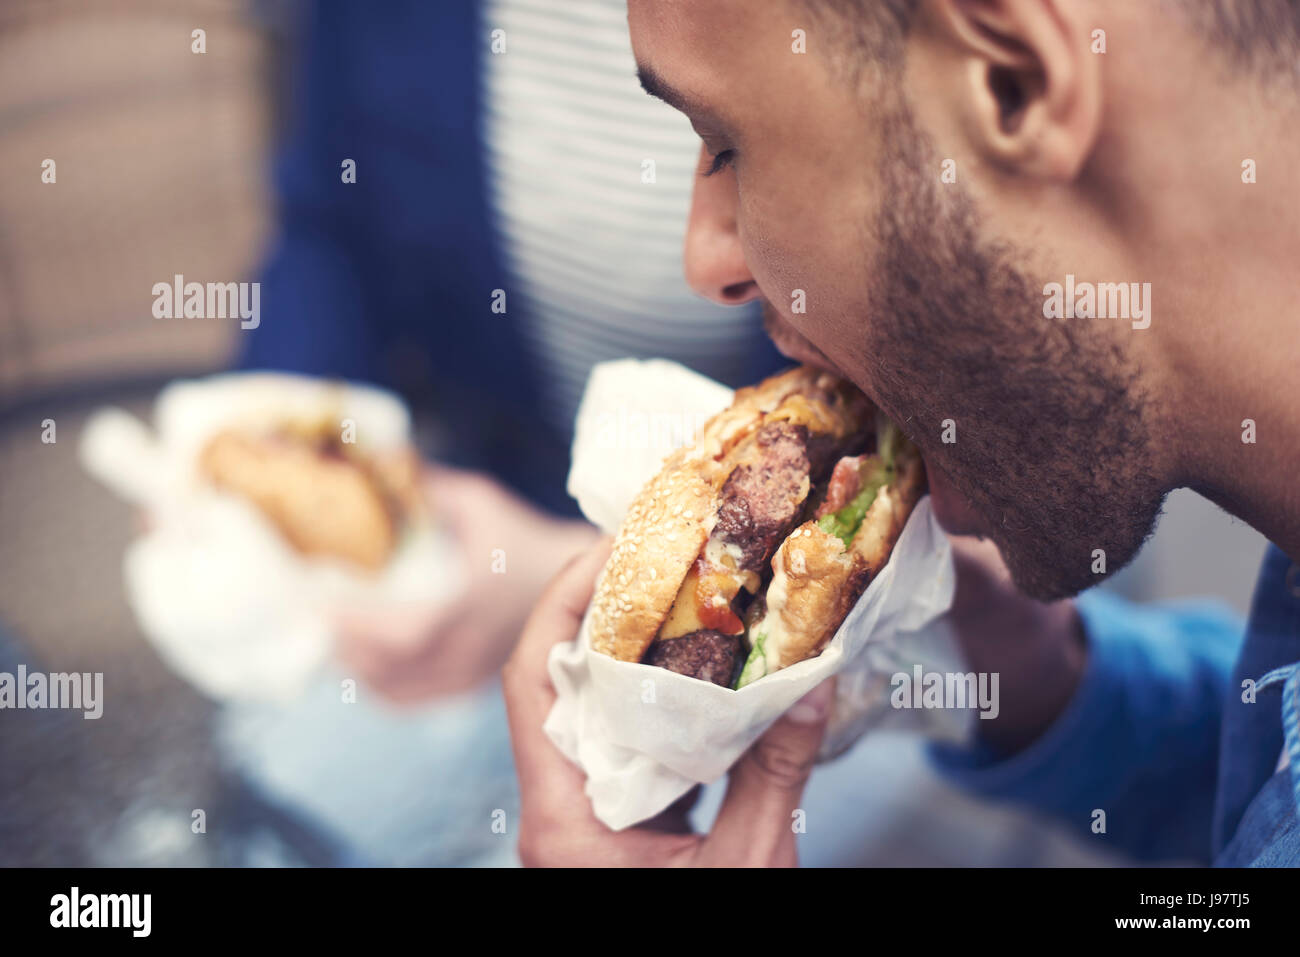 Close up of man eating cheeseburger Stock Photo